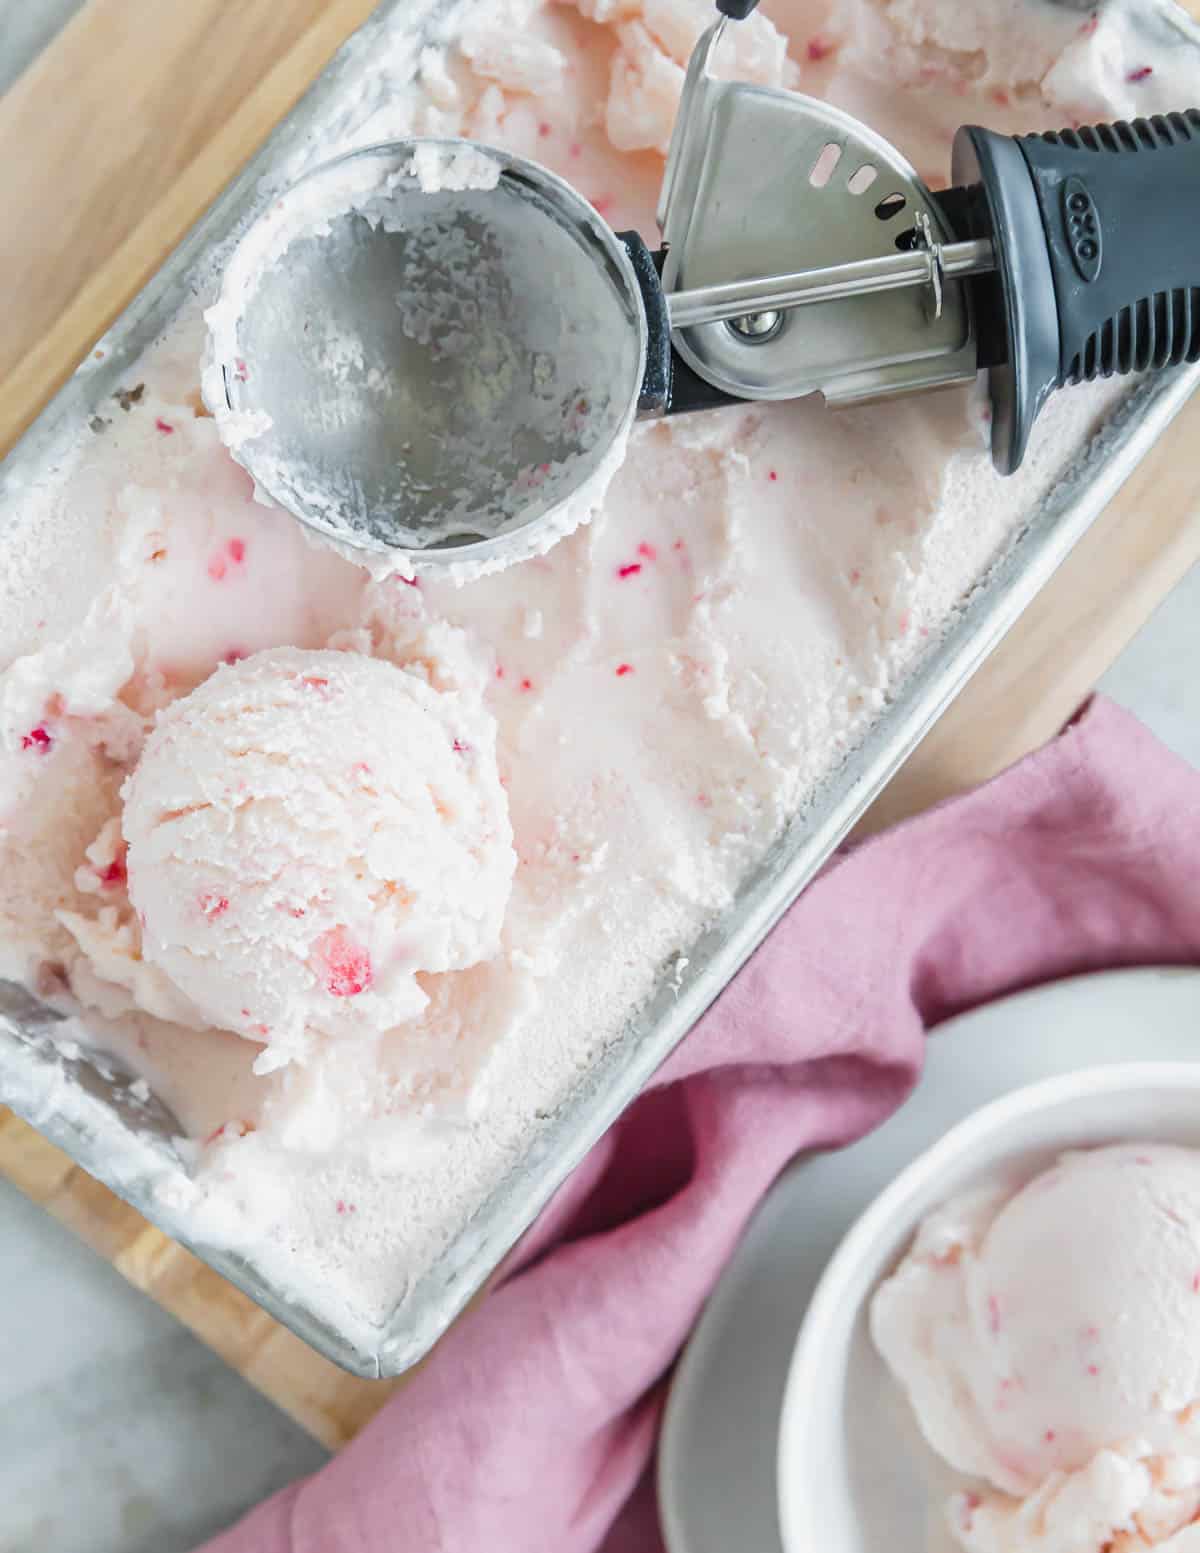 Strawberry vanilla kefir ice cream with ice cream scoop.